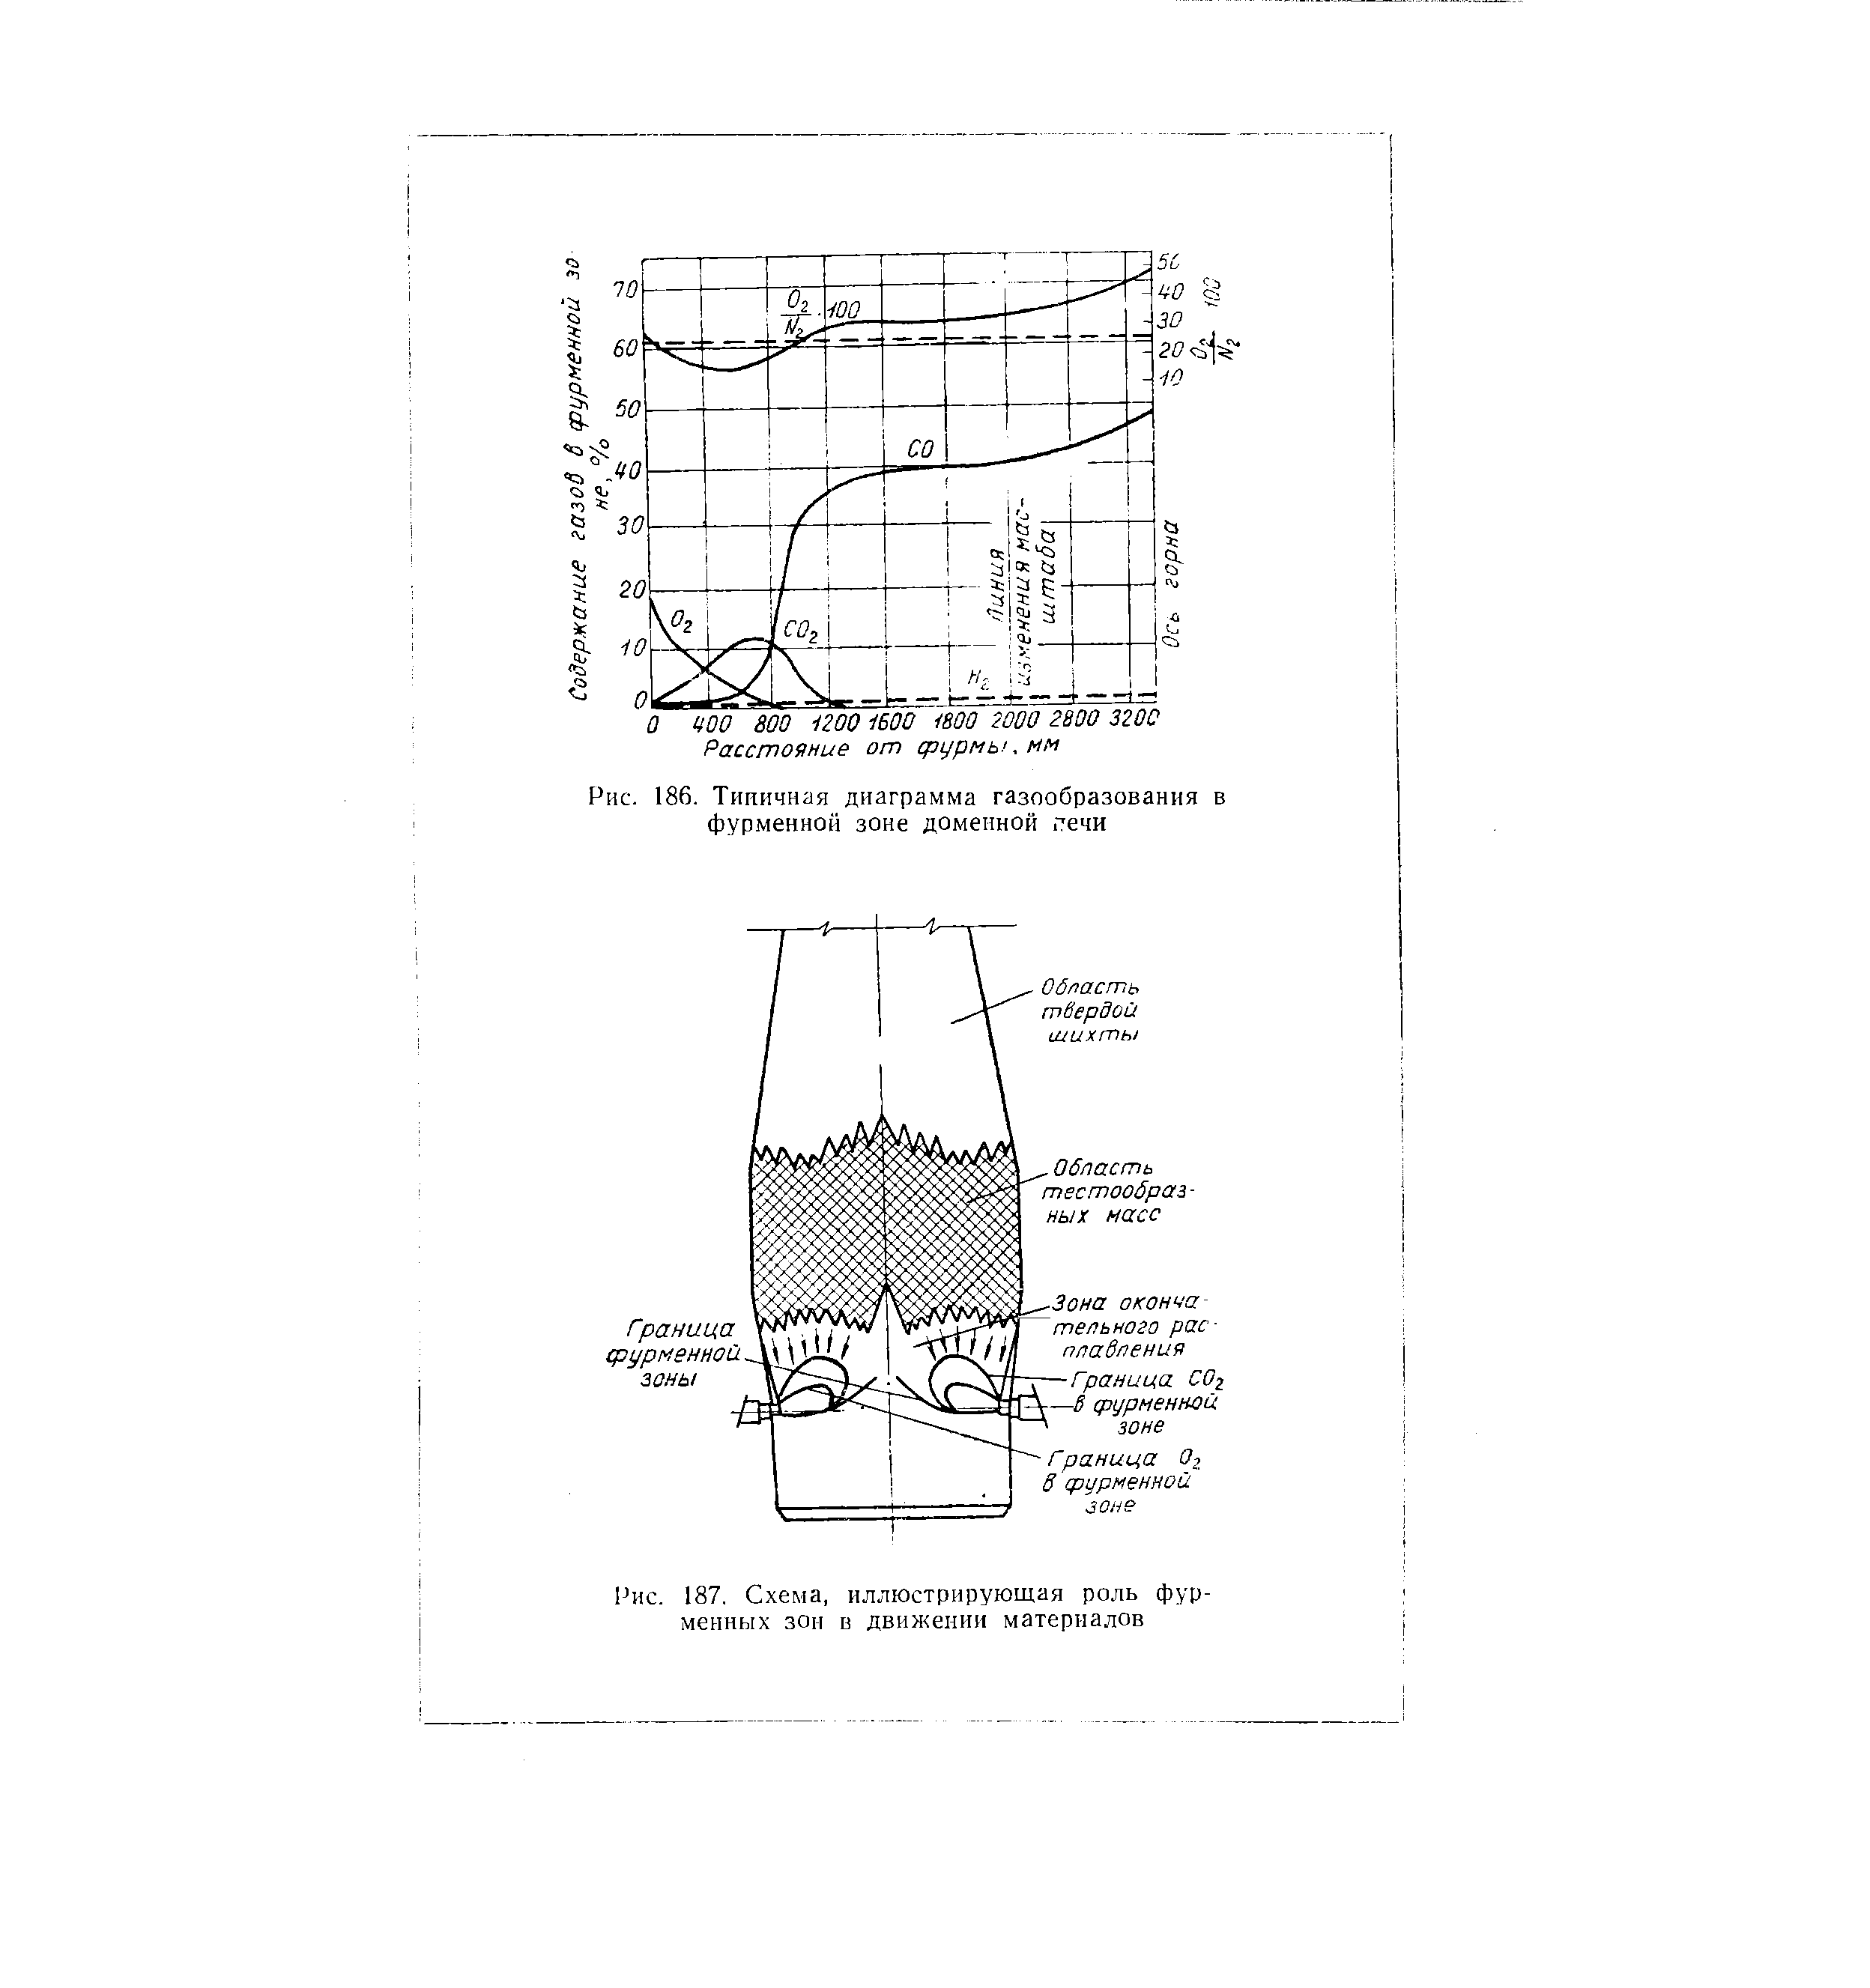 Рис. 187, Схема, иллюстрирующая роль фурменных зон в движении материалов
